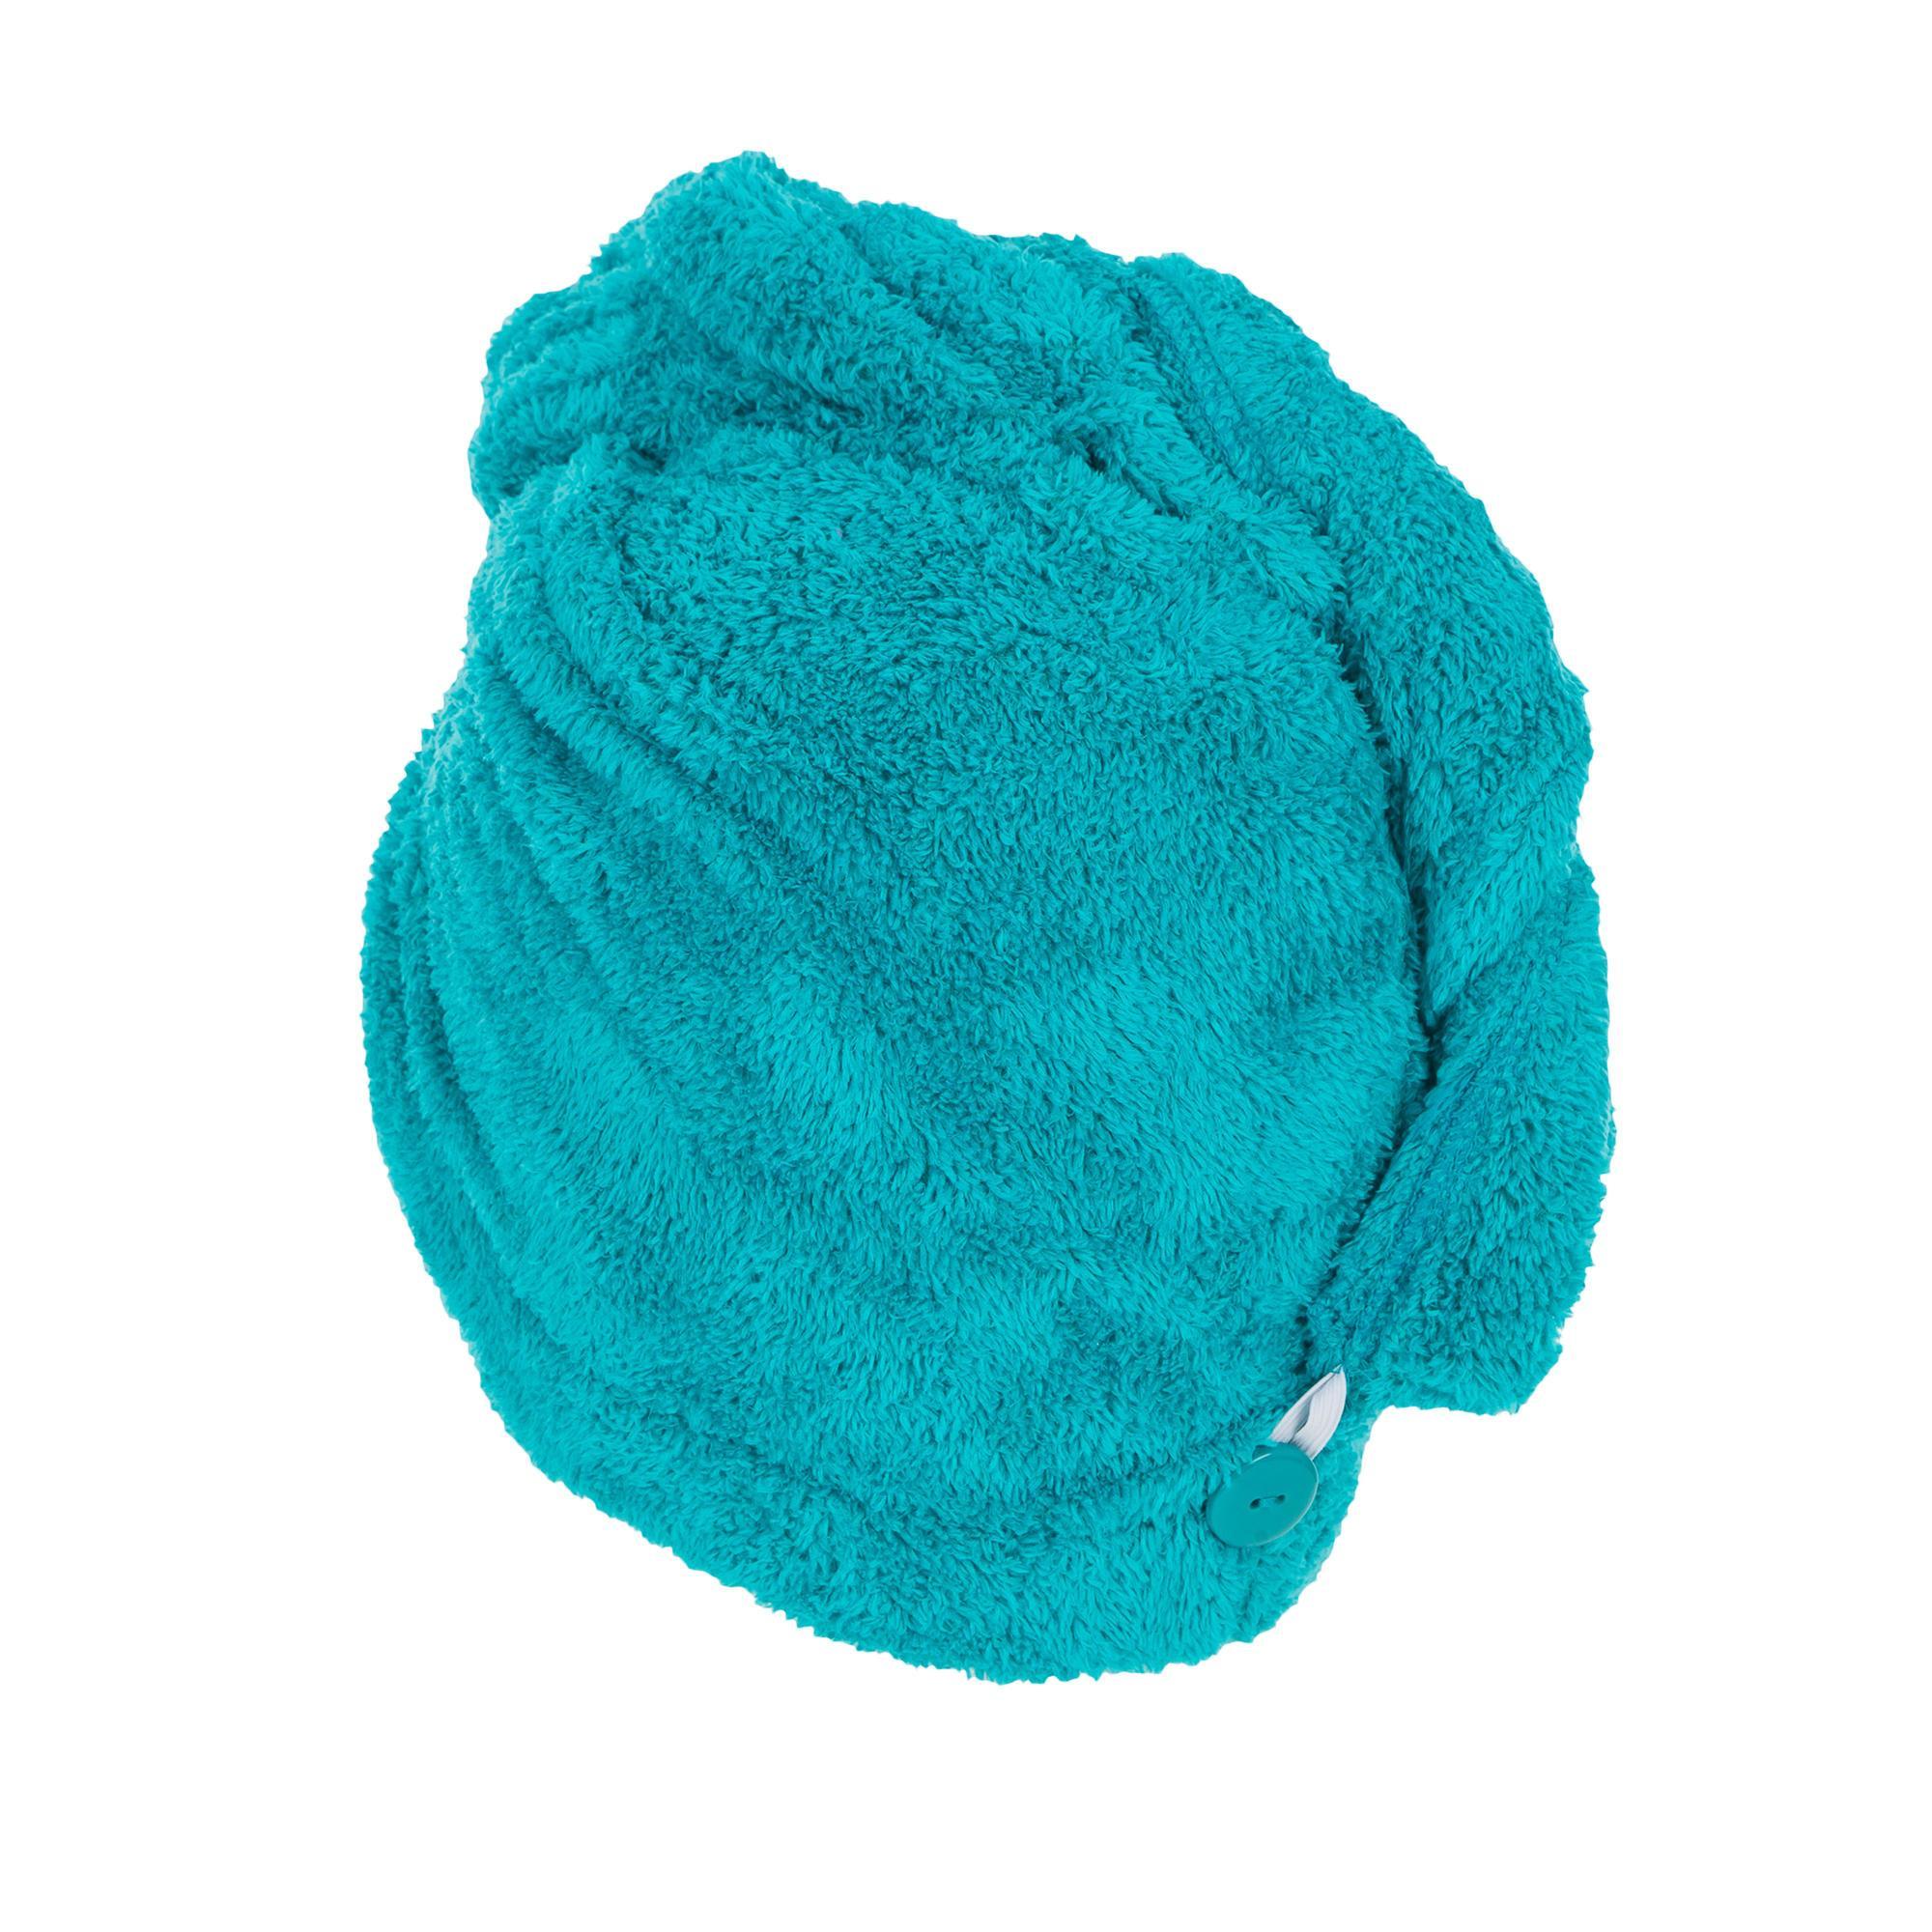 capelli Wrap capelli essiccazione asciugamani asciugamano super assorbente in microfibra capelli turbante con pulsante design per asciugare i capelli velocemente 2 pezzi 